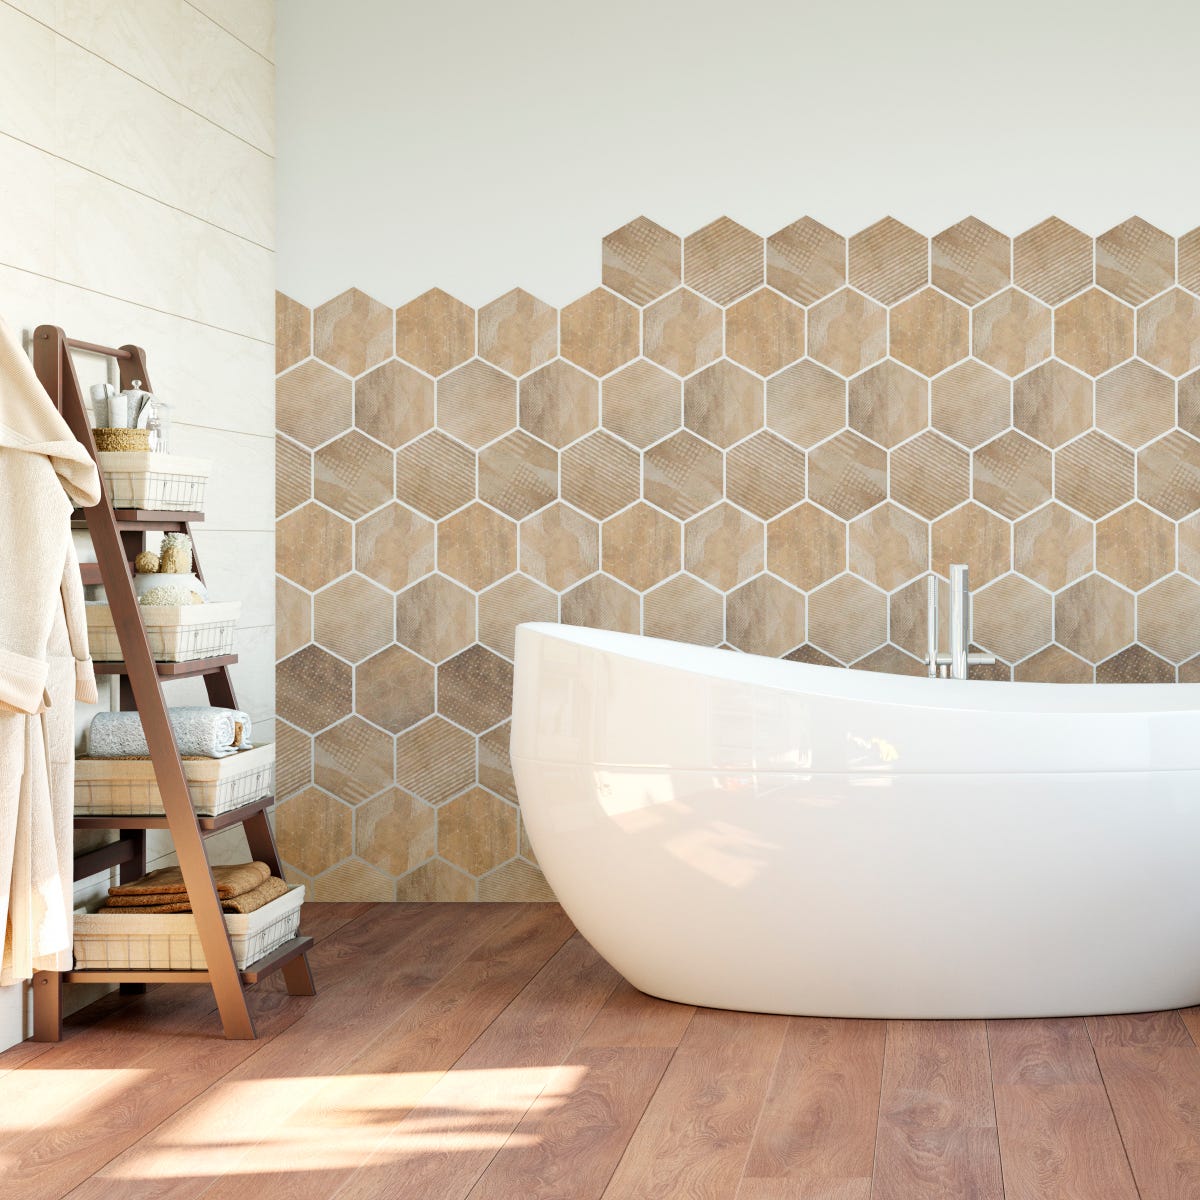 Vinilo para forrar muebles azulejos hexagonales